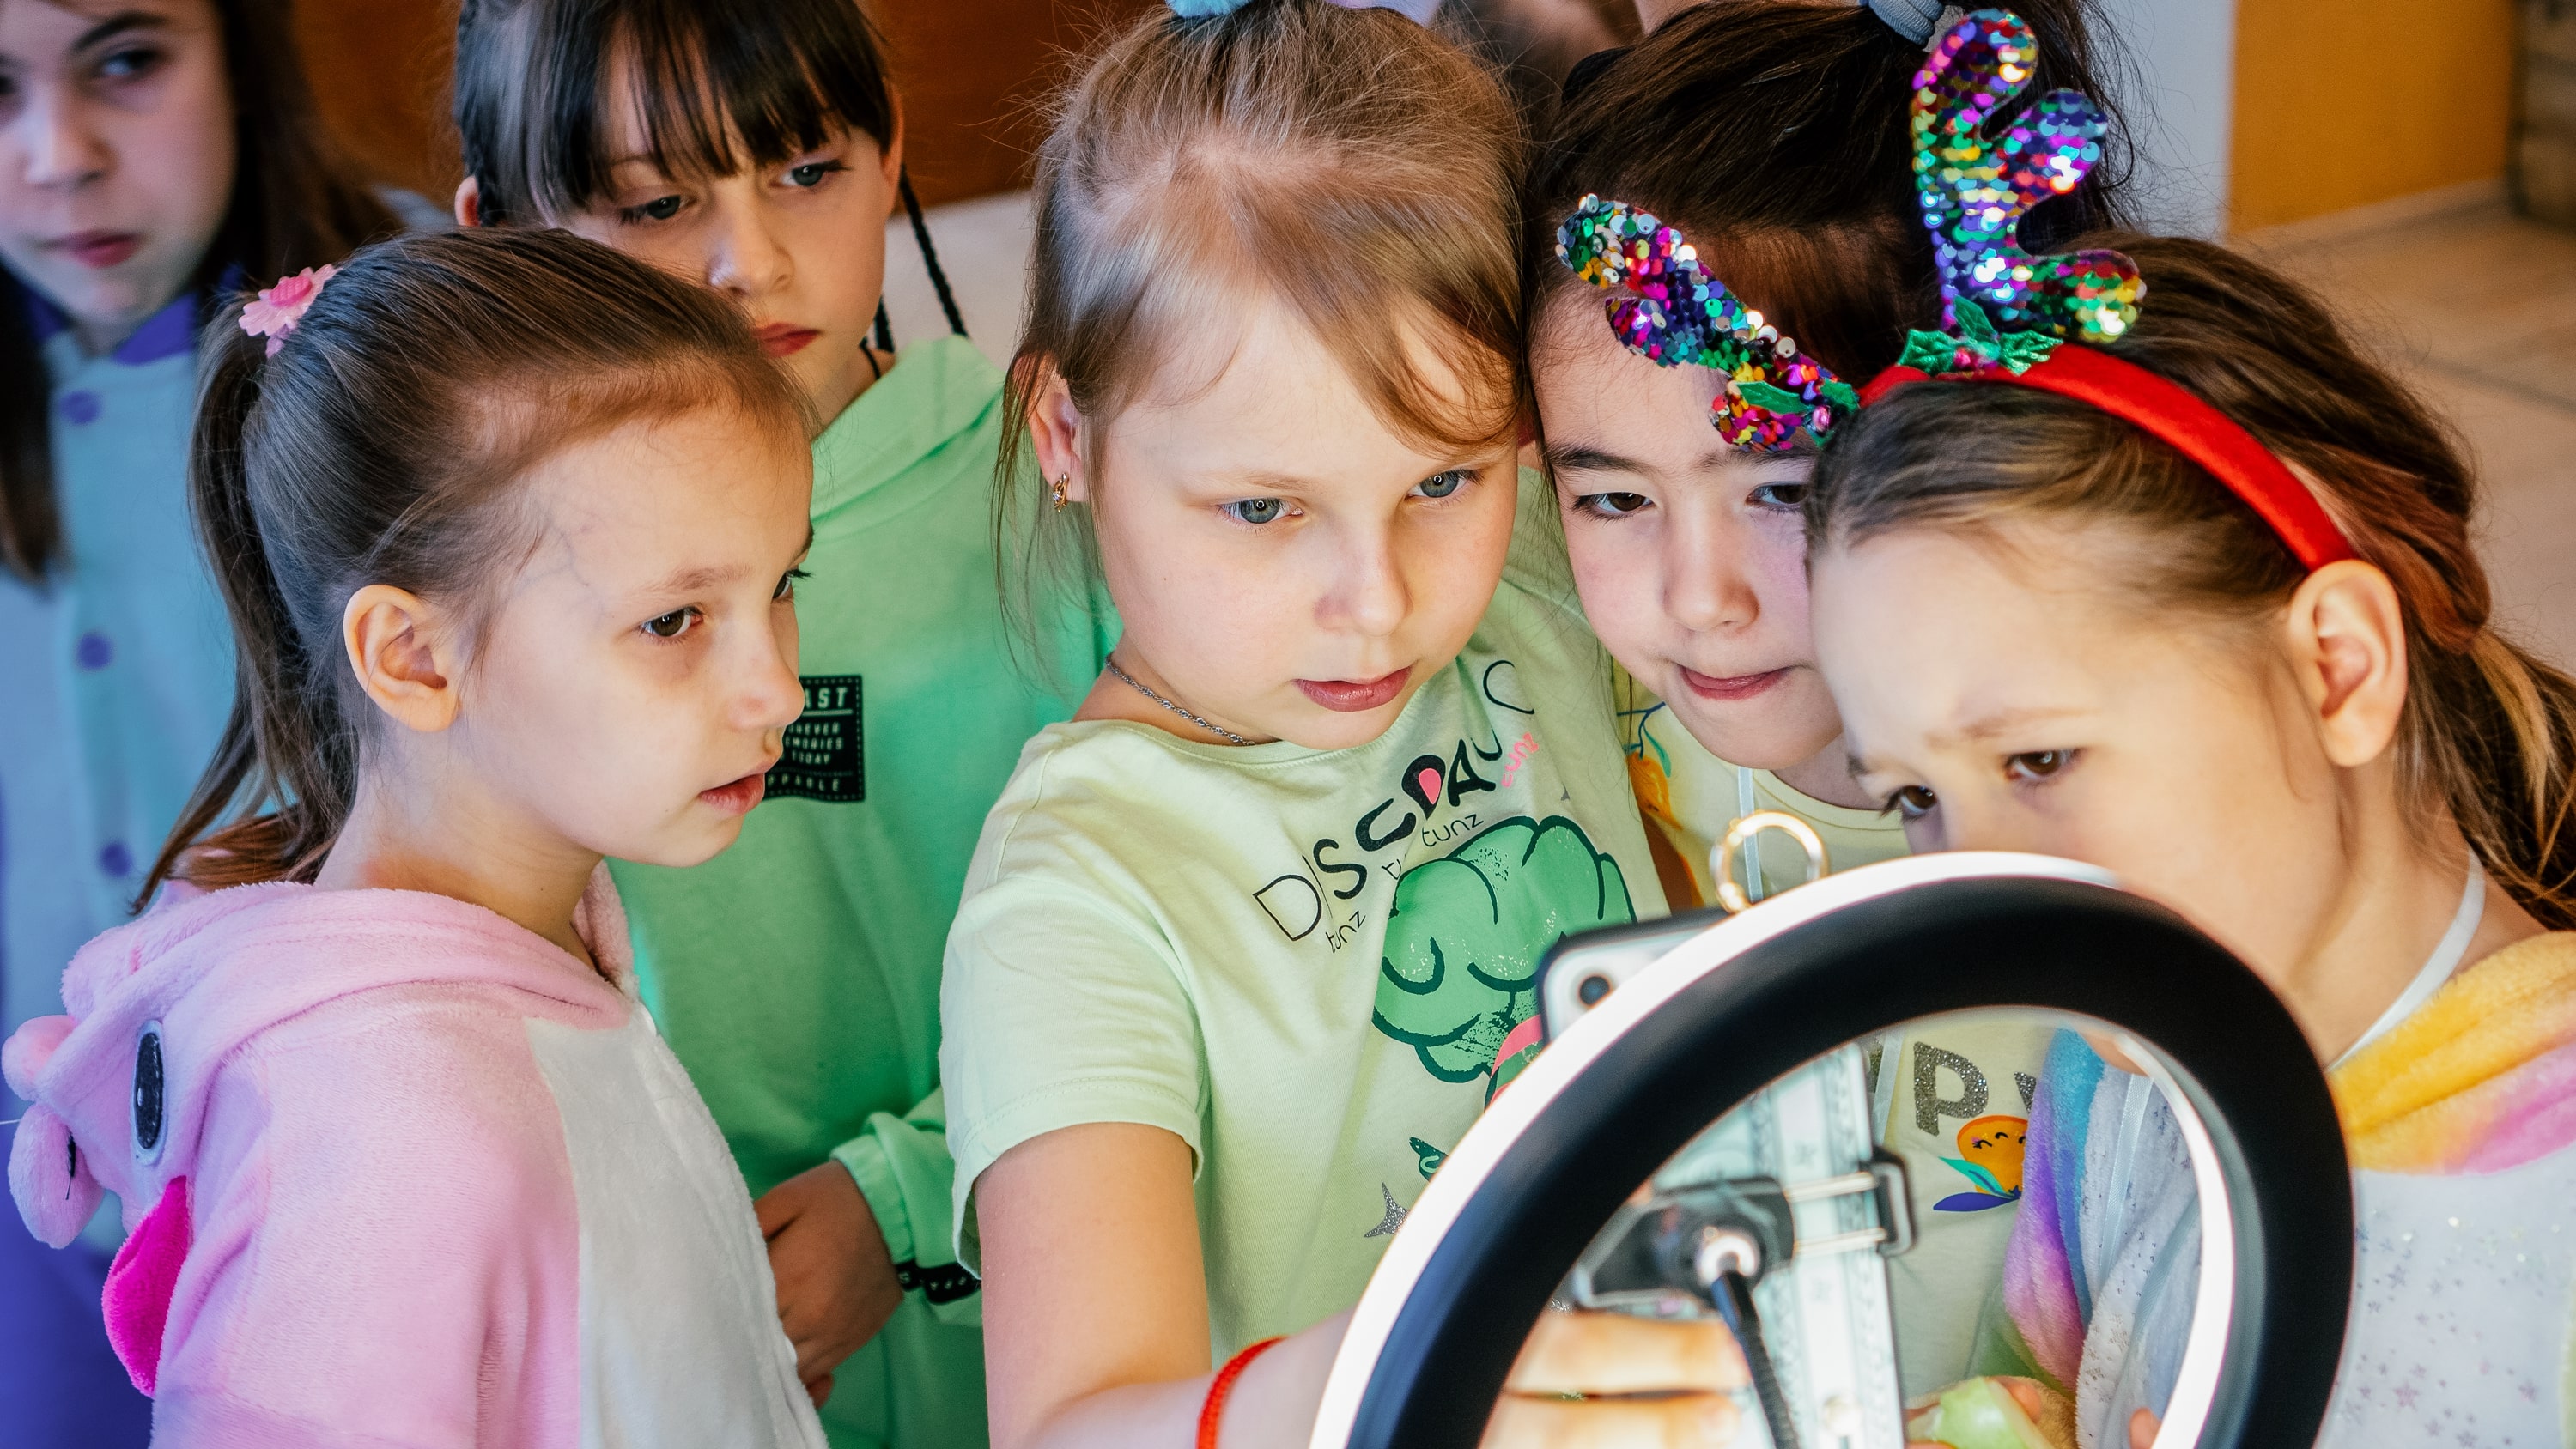 «Творческие каникулы для девочек Little Stars» – лагерь с бассейном, Санкт-Петербург, д. Марьино. Путевки в детский лагерь на 2023 год, фото обучения 6